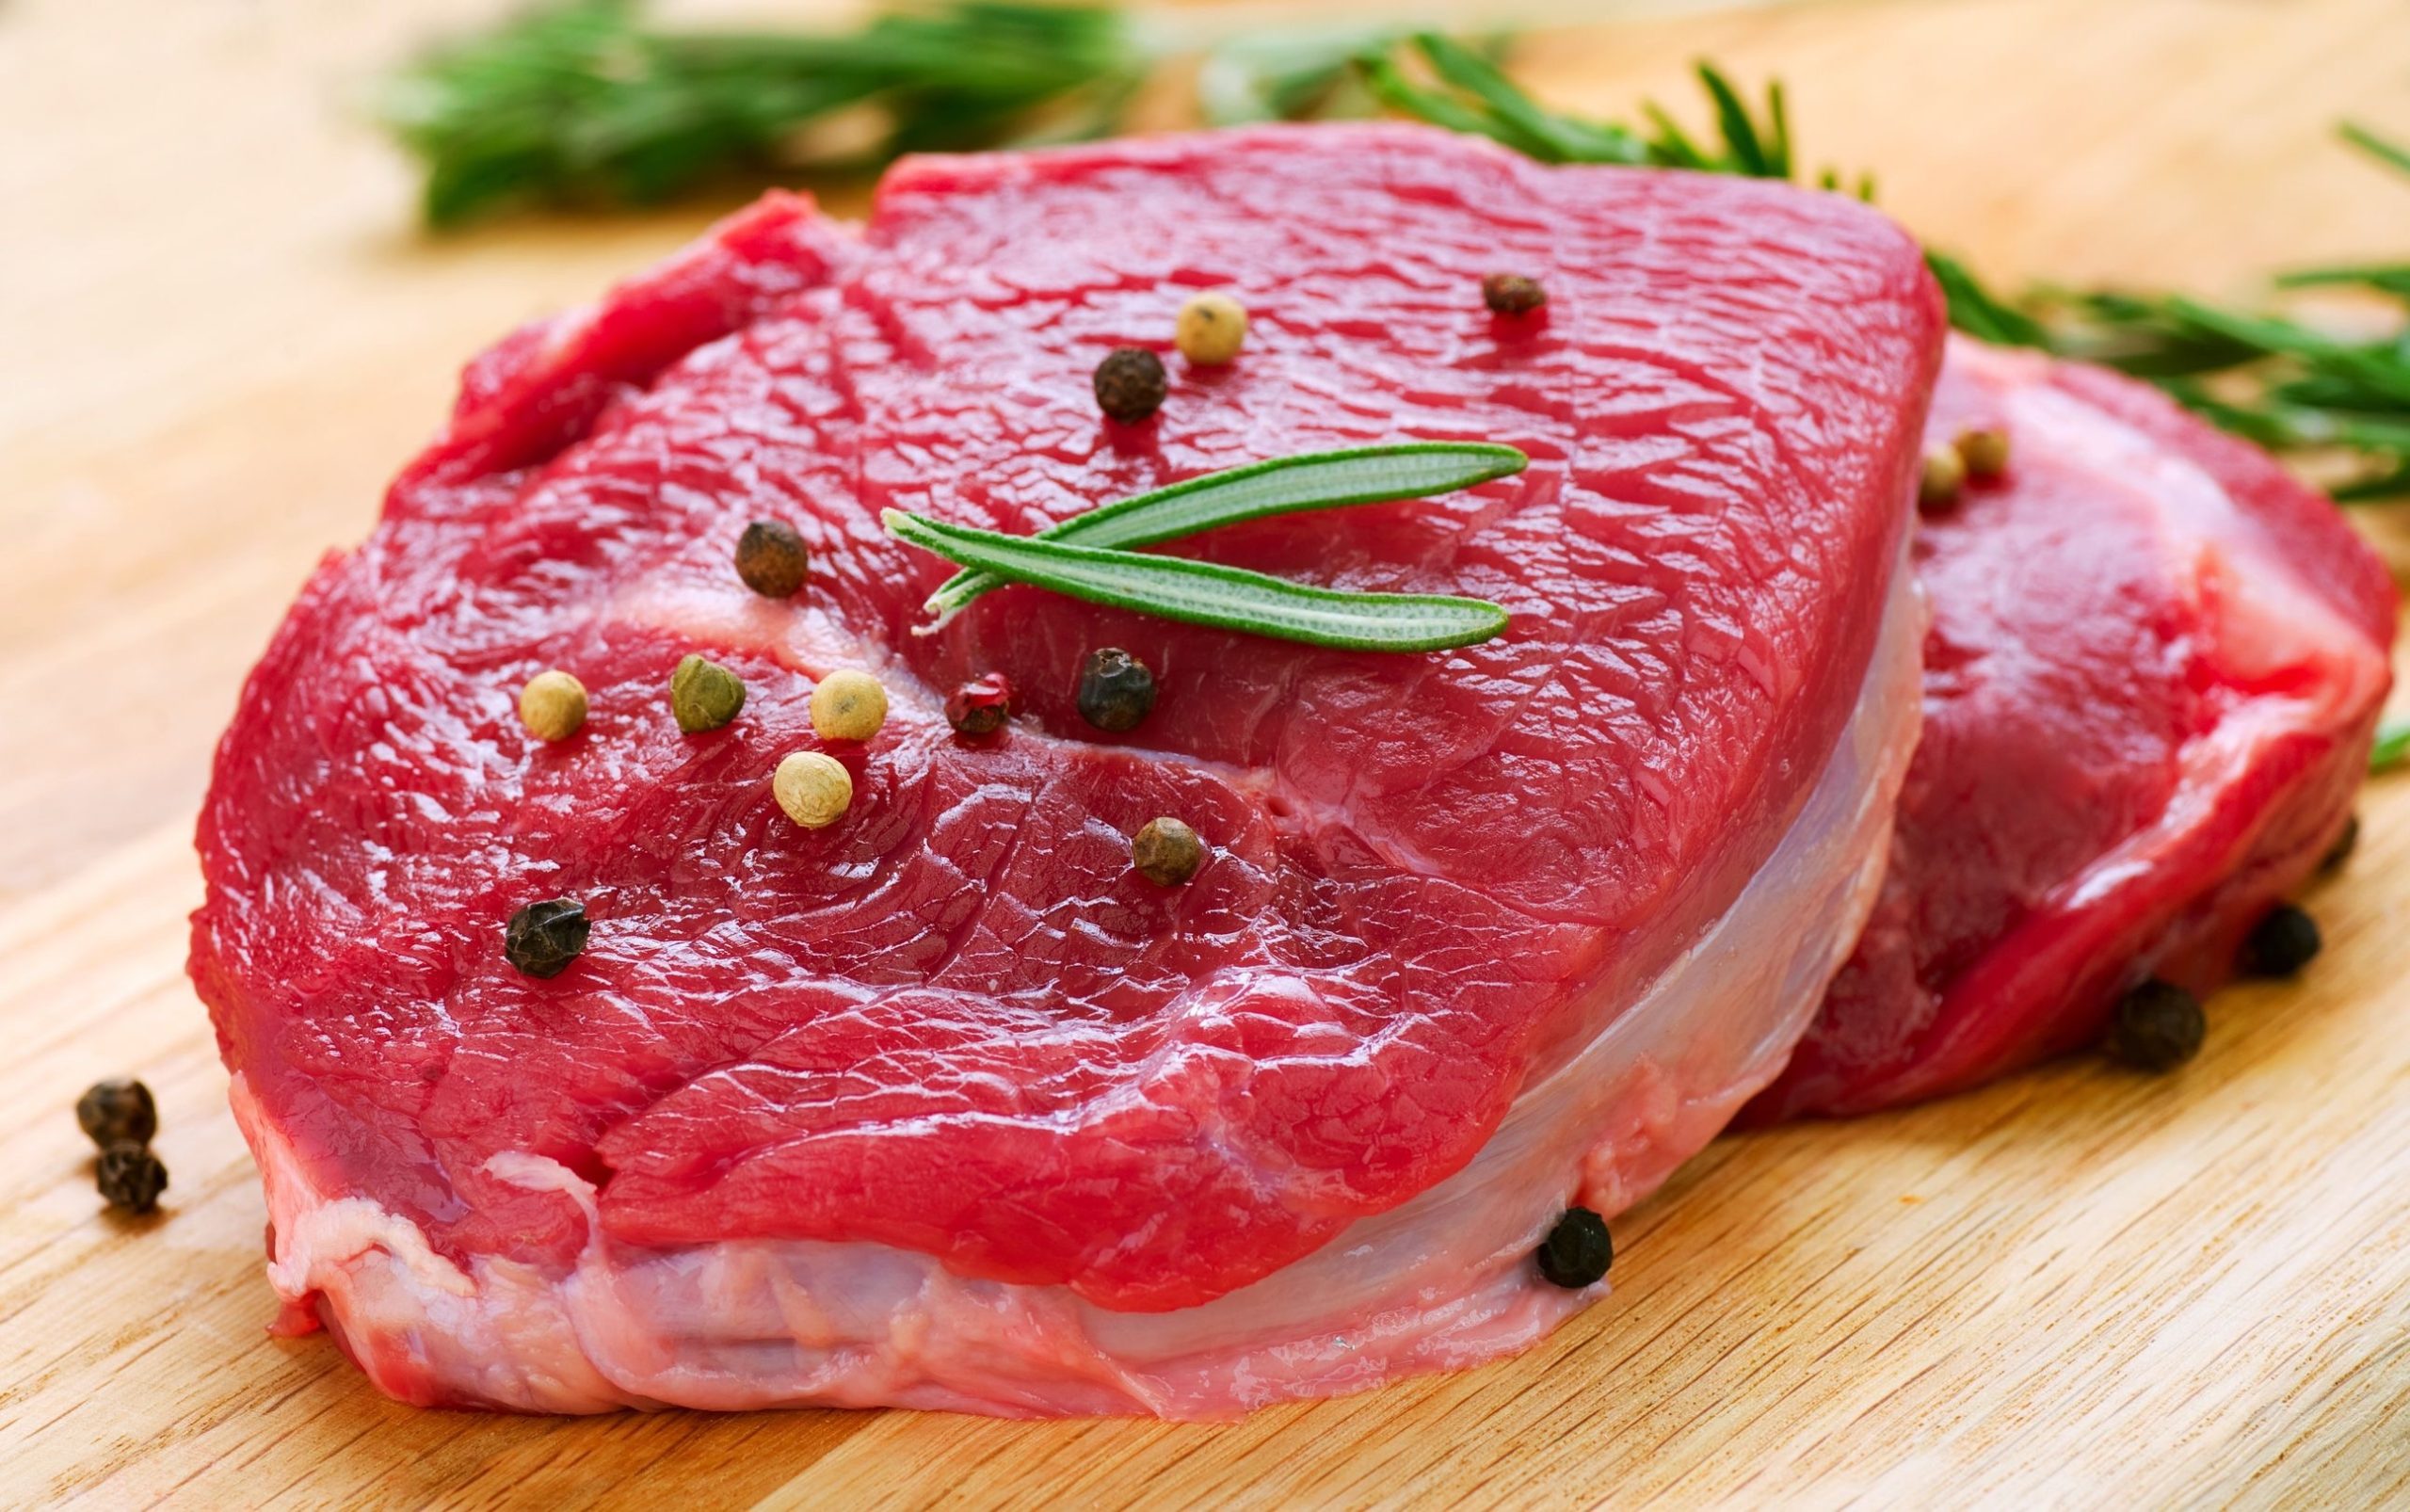  أفضل طرق حفظ اللحوم المجمدة